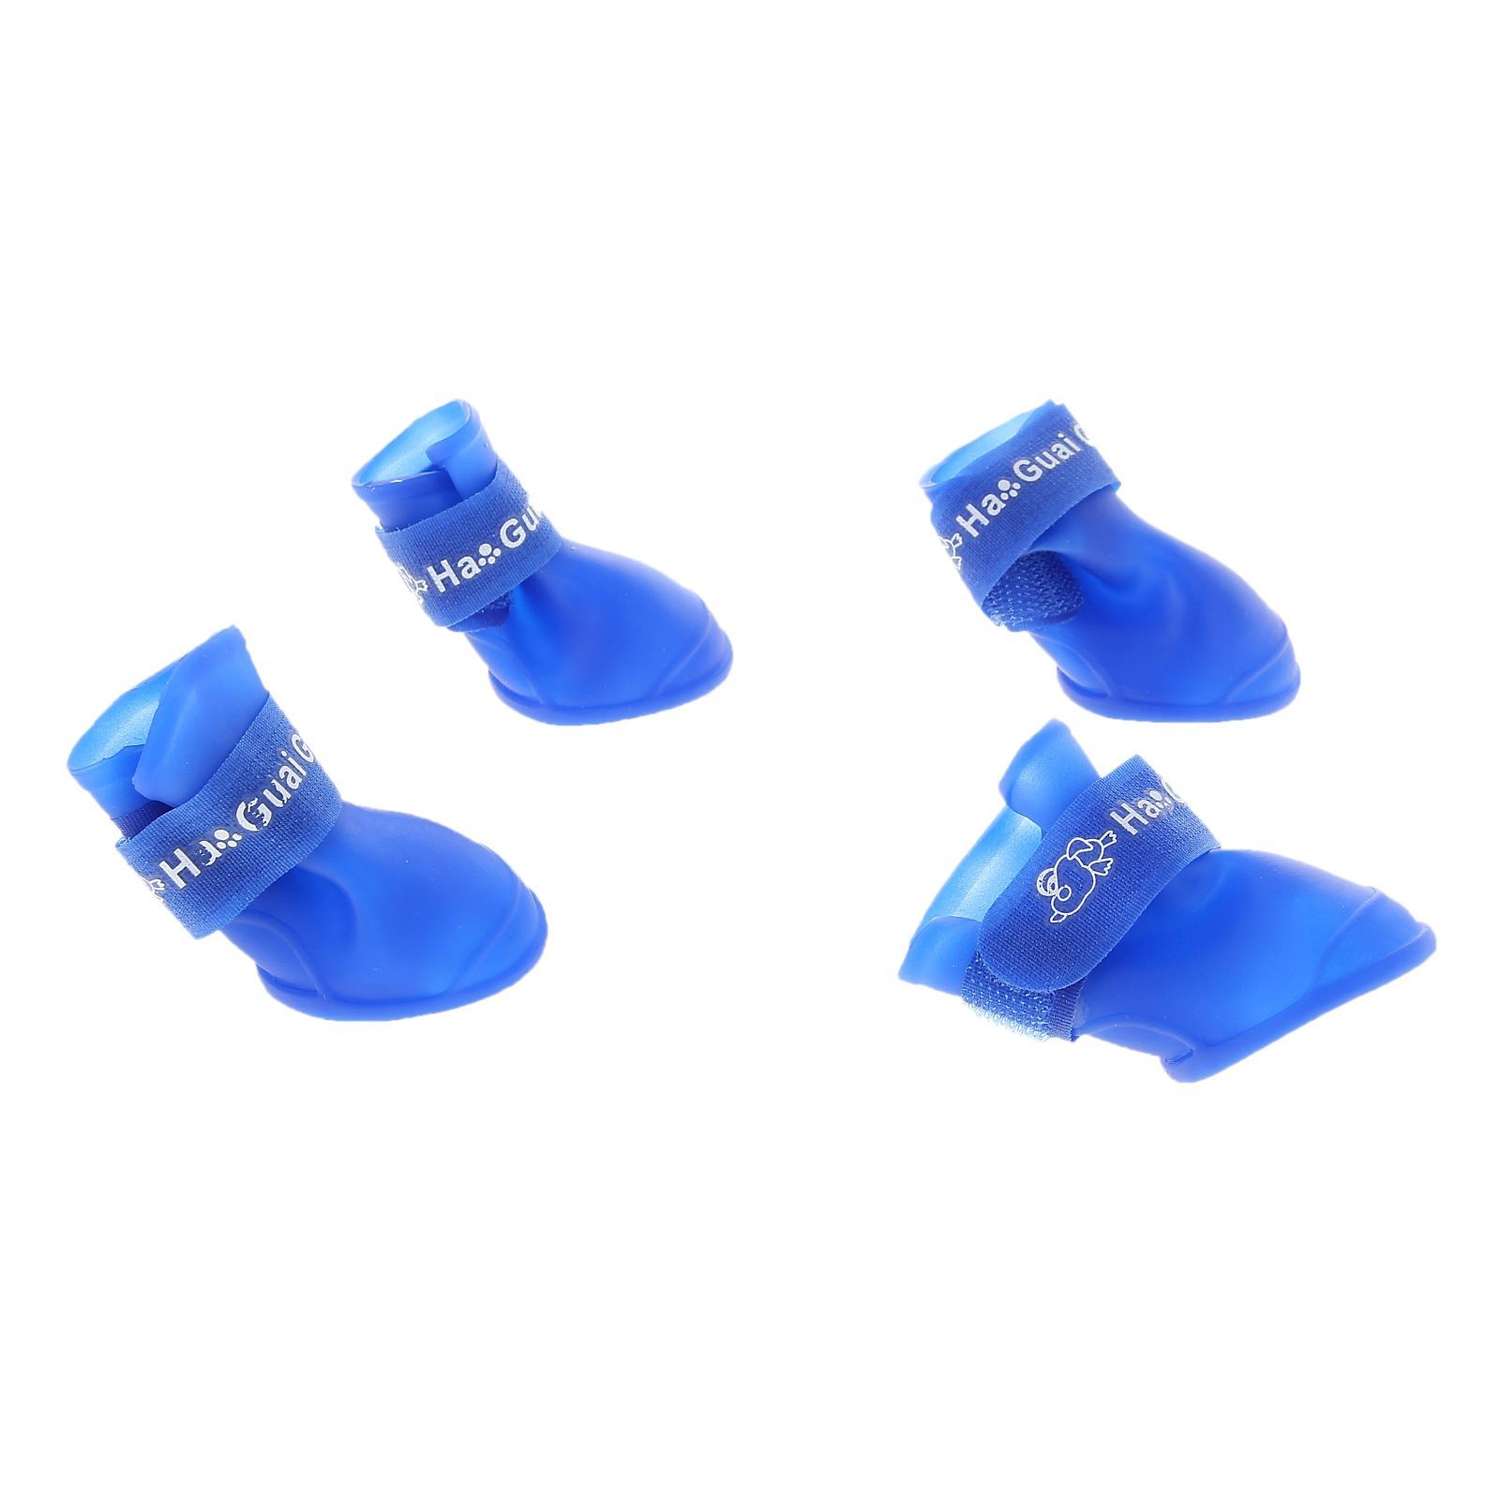 Сапоги Пижон резиновые Вездеход набор 4 шт размер L подошва 5.7х4.5 см синие - фото 1